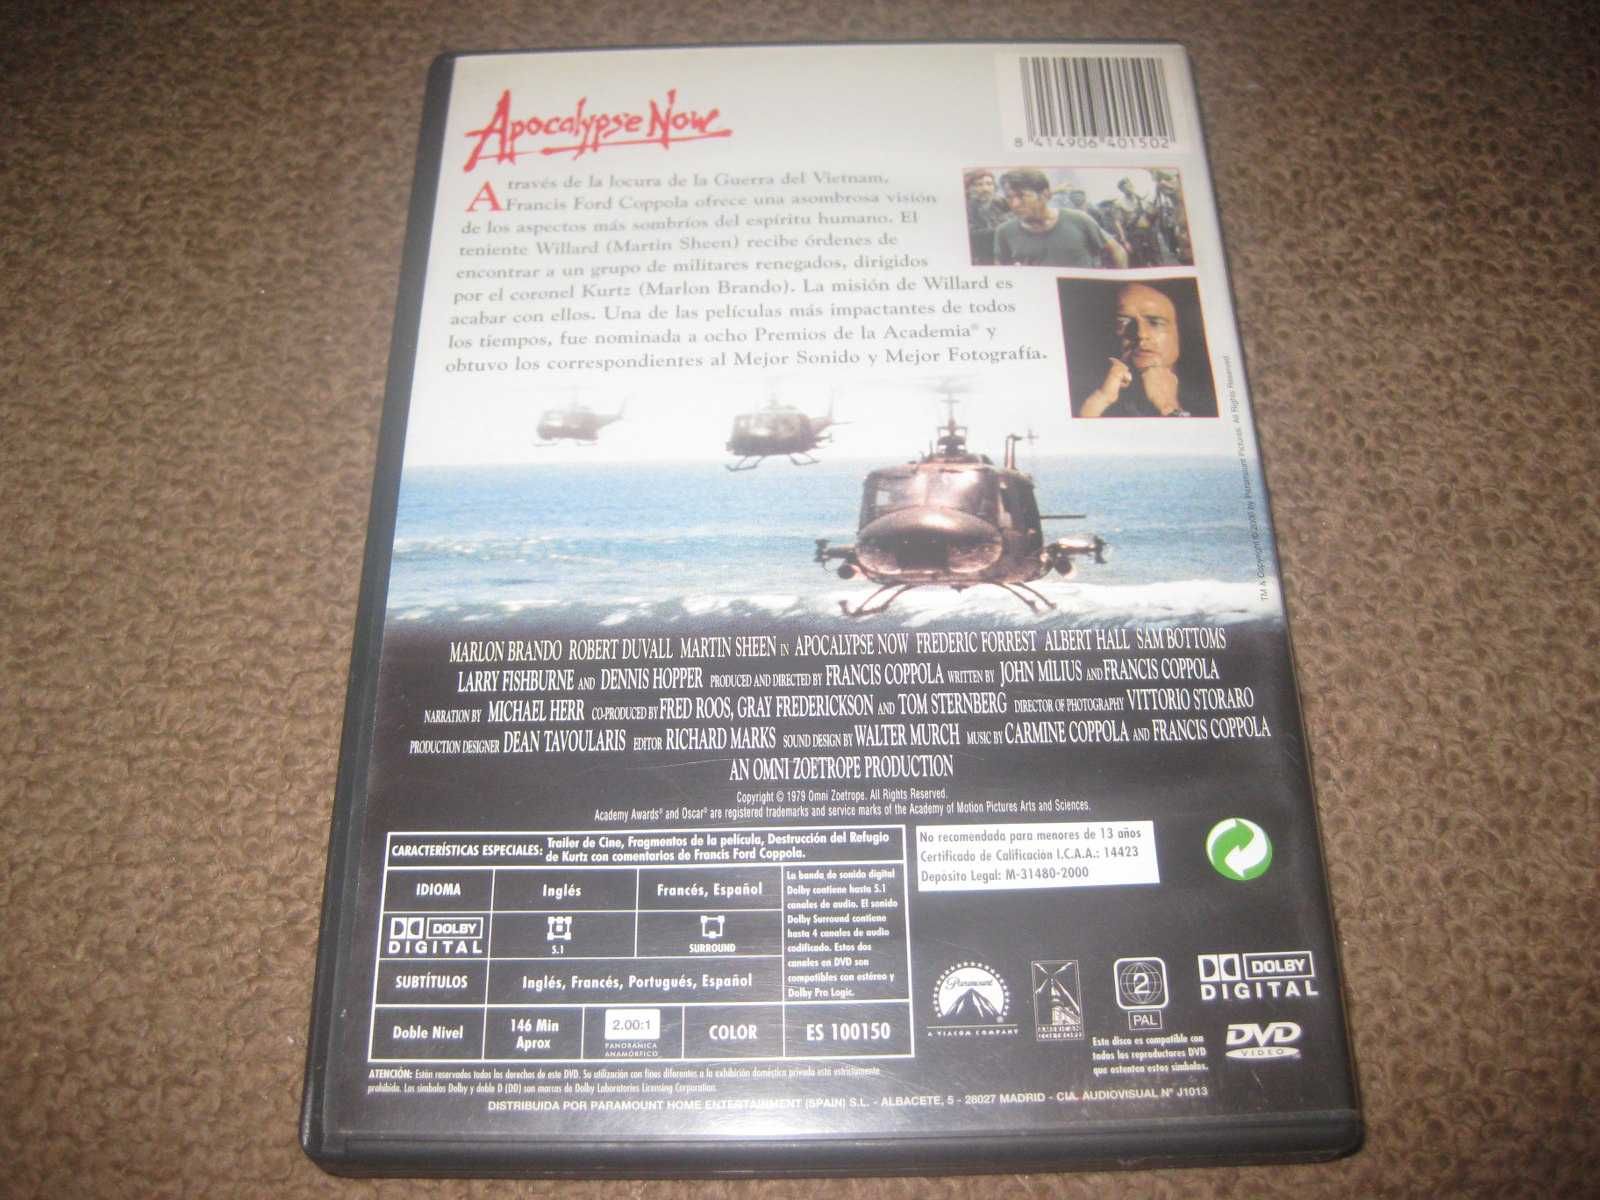 DVD "Apocalypse Now" de Francis Ford Coppola